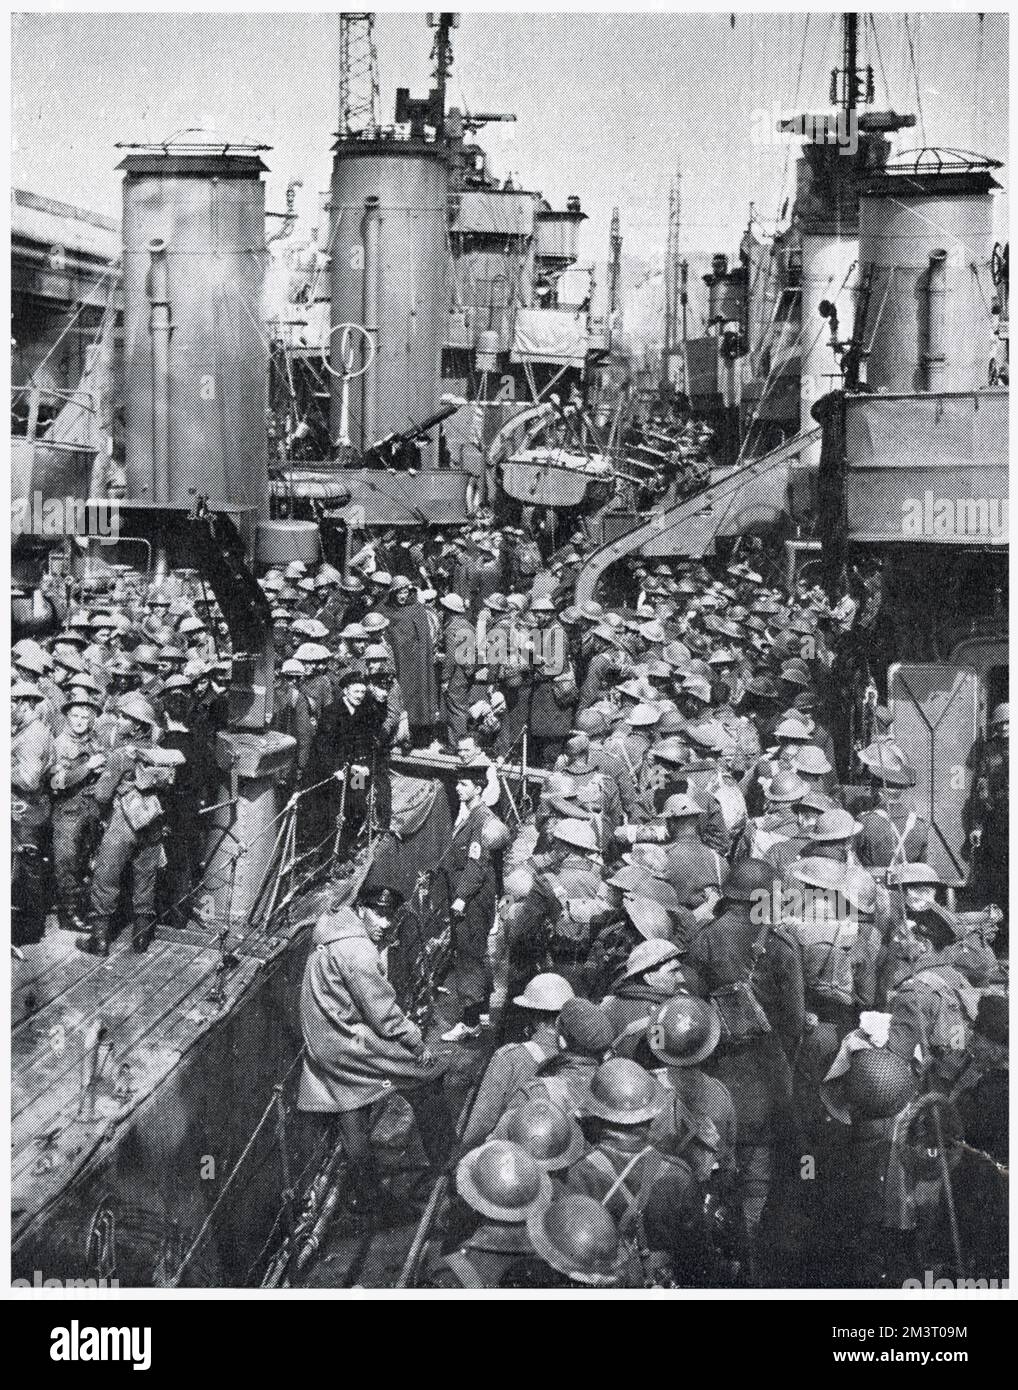 Die Rückkehr der britischen Expeditionstruppe aus Dünkirchen, Nordfrankreich, zeigt den evakuierten Männern, die von einem Zerstörer zum nächsten gehen, um den beladenen Kai eines südöstlichen englischen Hafens zu erreichen. Datum: 1940 Stockfoto